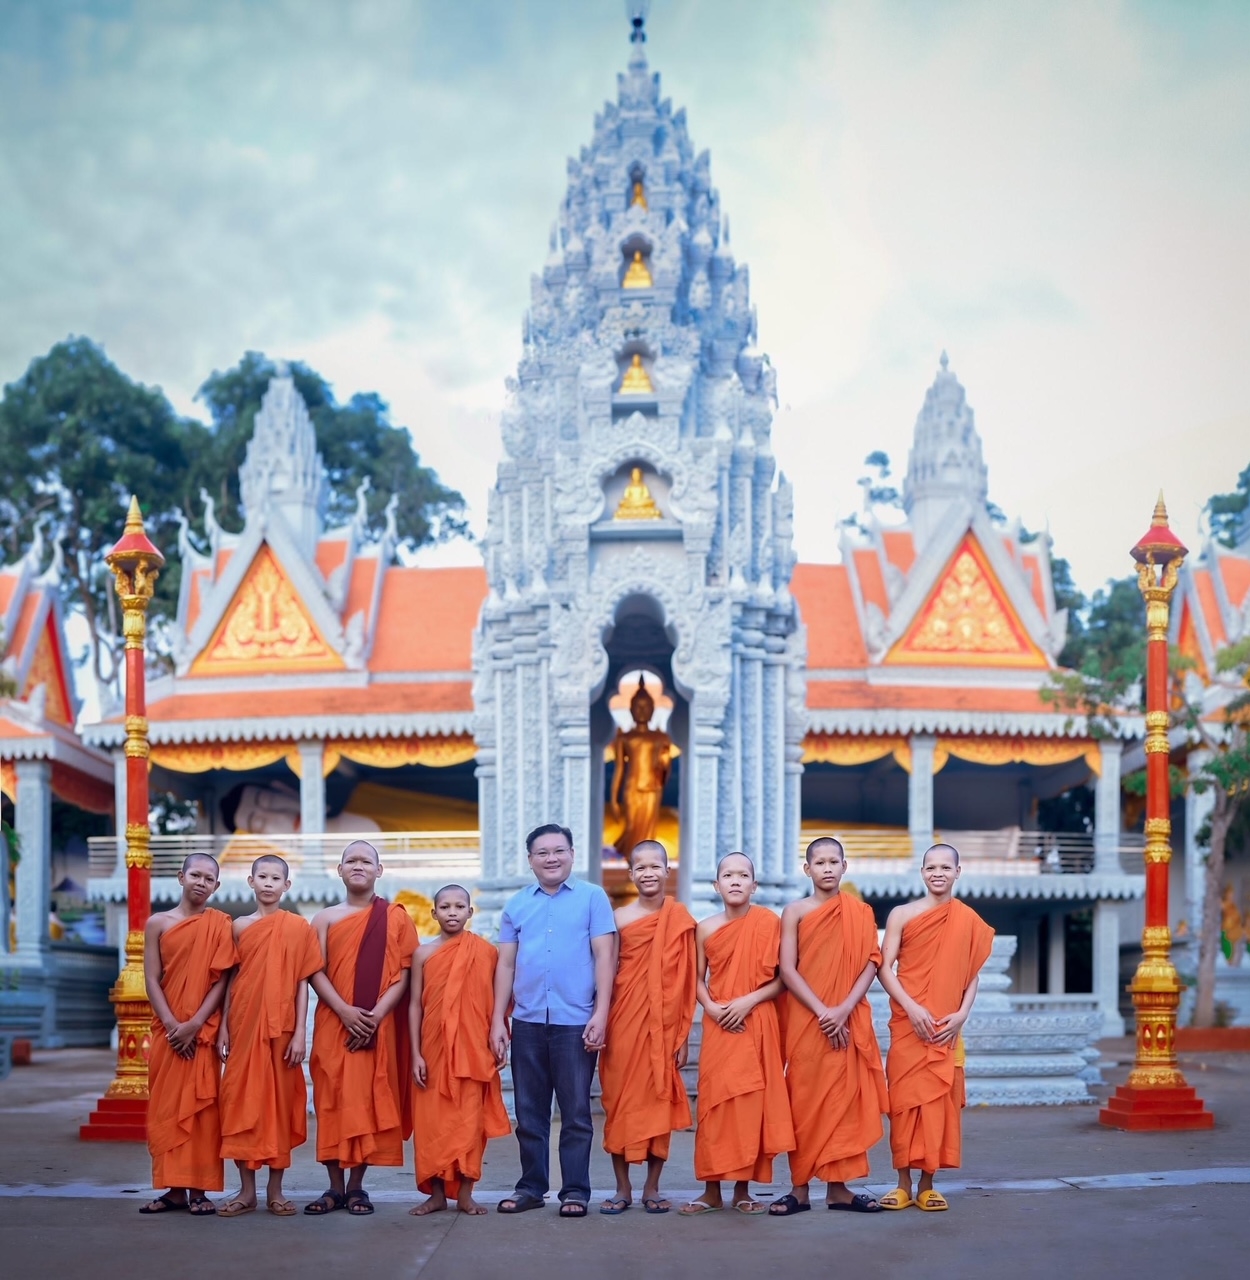 Doanh nhân Trần Khắc Tâm đến thăm và động viên các sư tu học tại chùa Khmer. (Ảnh chụp dịp Tết 2021)